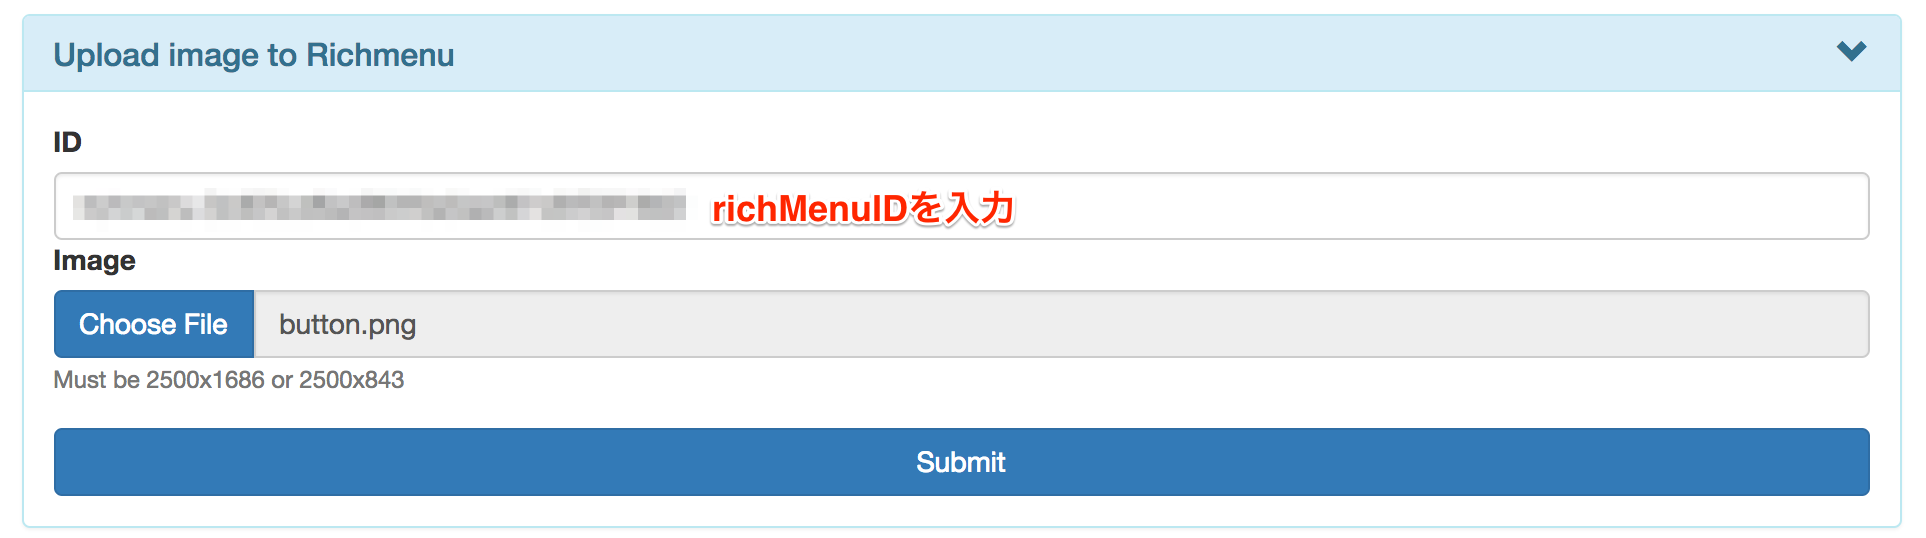 Rich_Menu_API_Util_Unofficial_のコピー 2.png